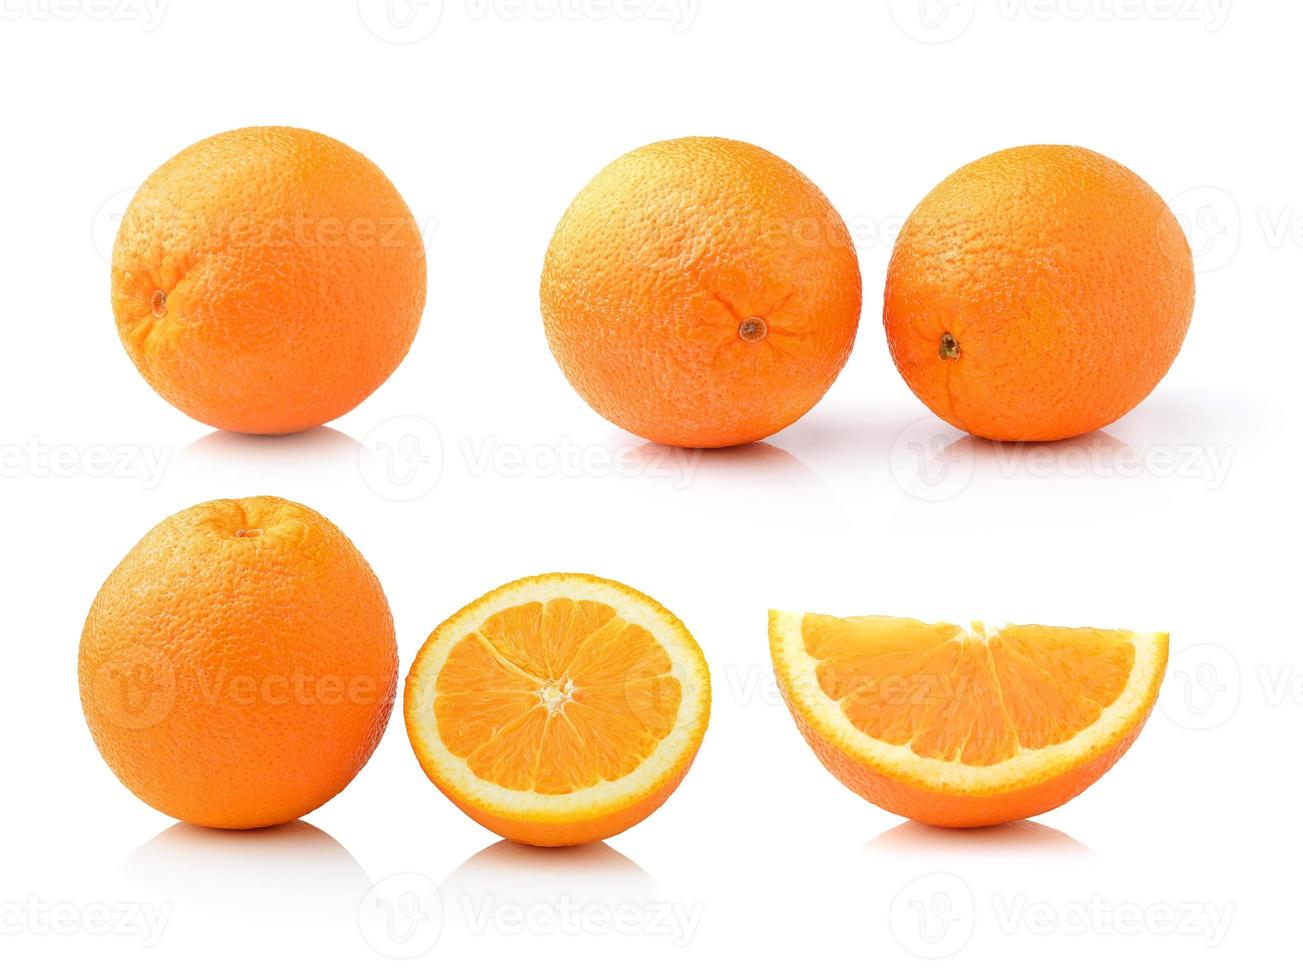 fruit orange isolé sur fond blanc photo